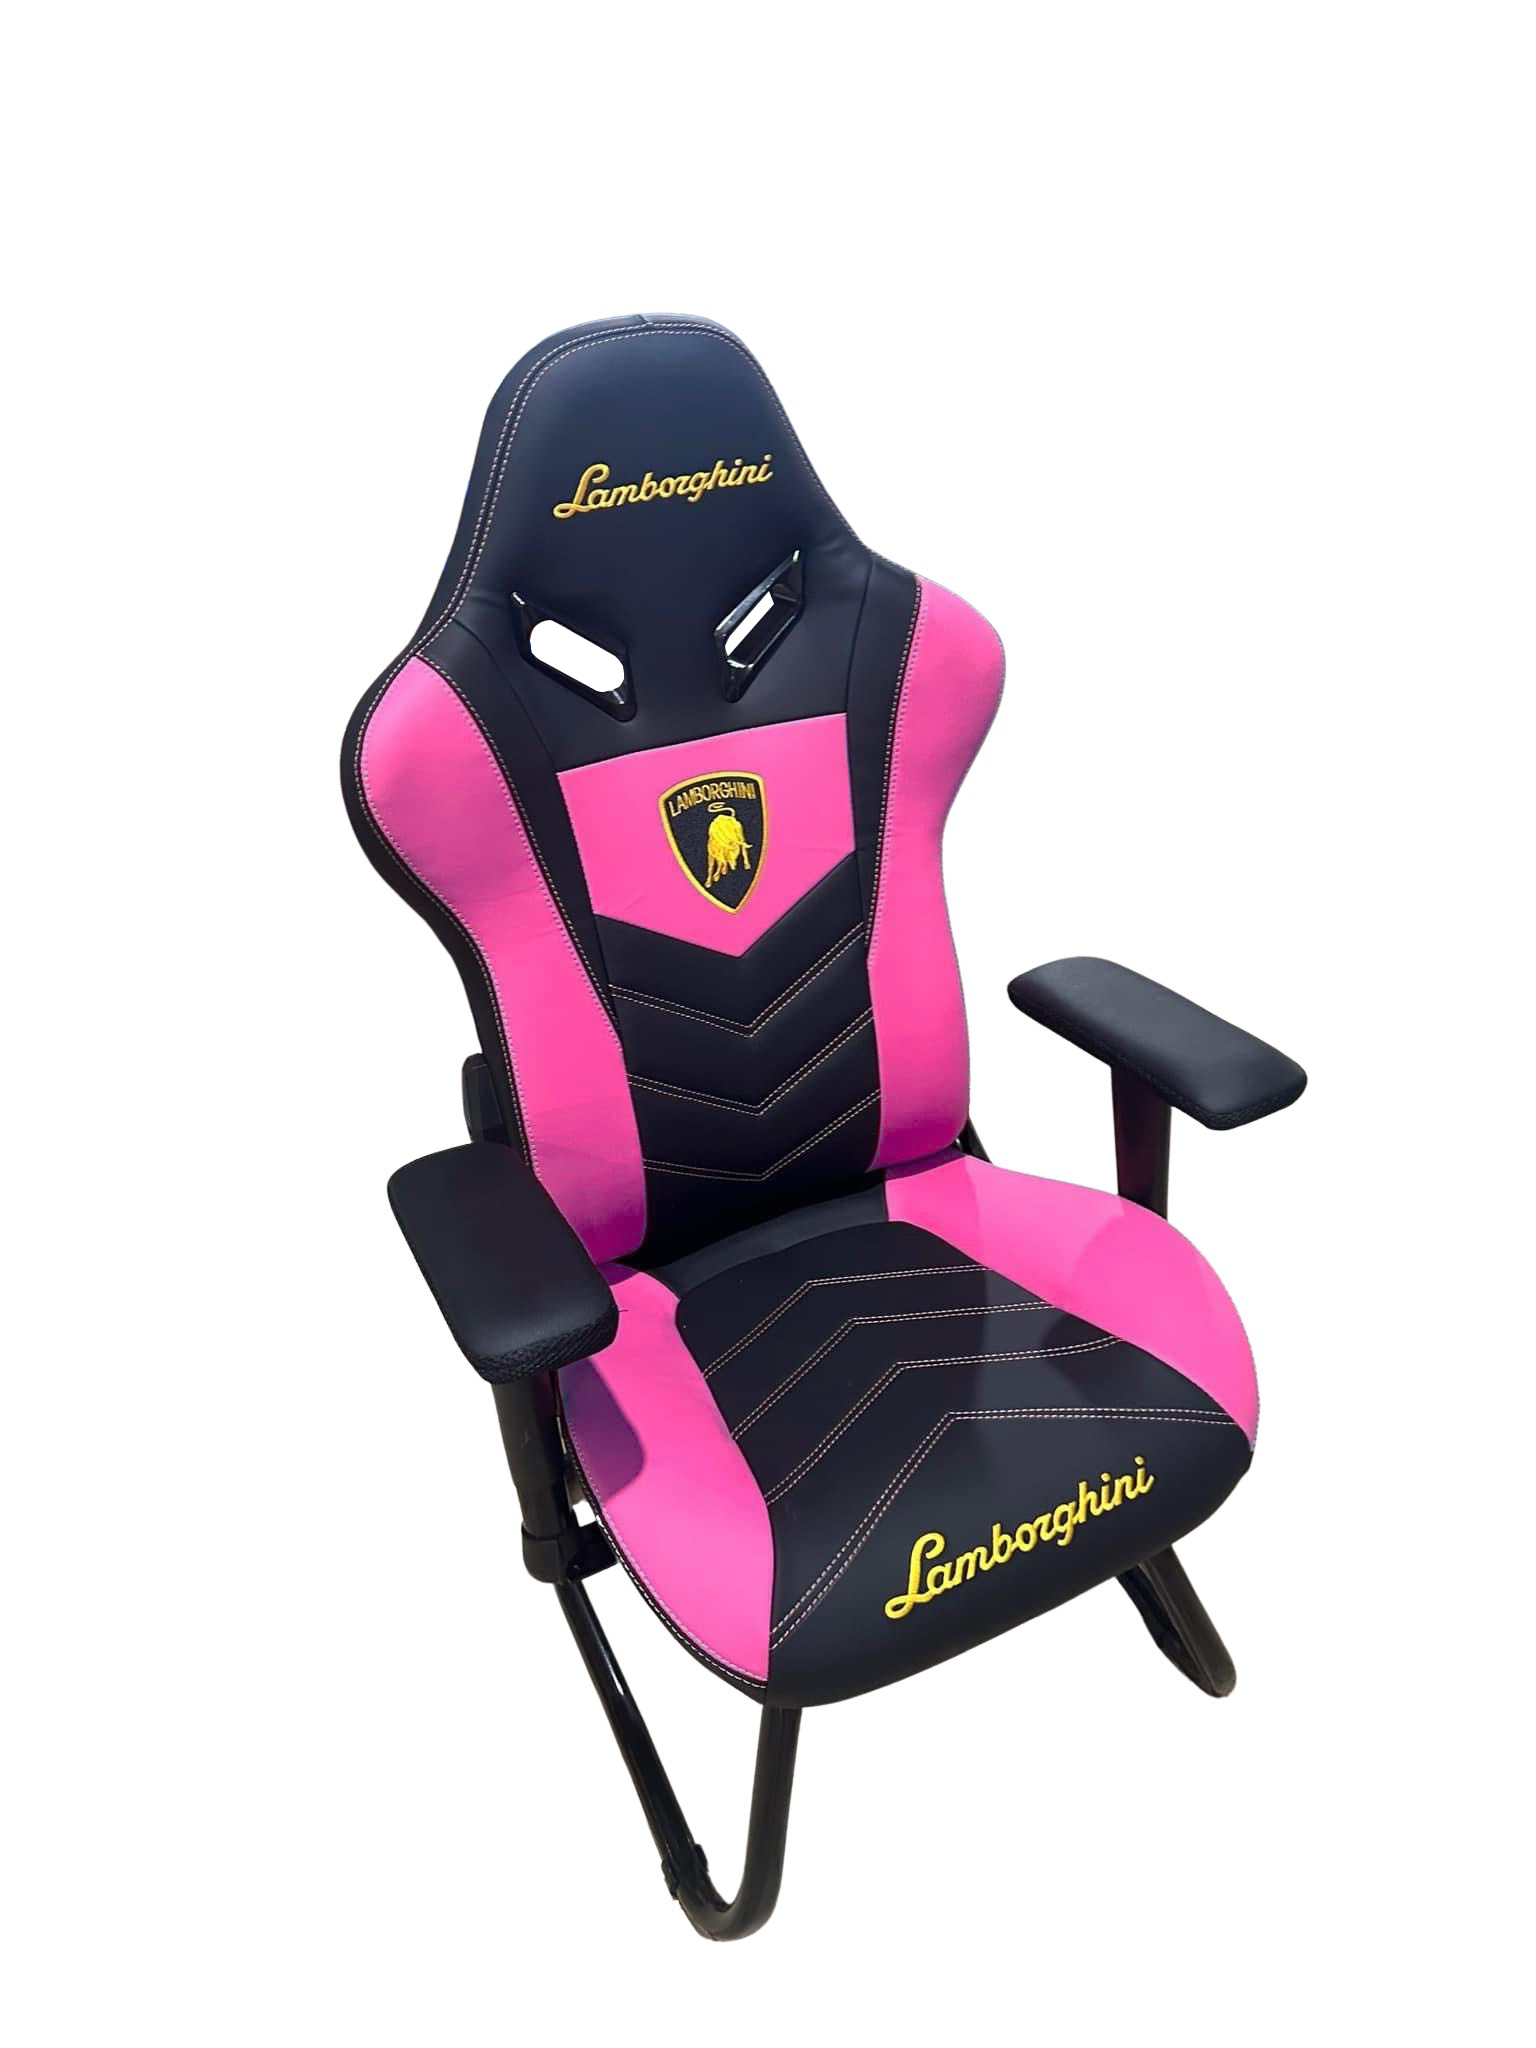 Ghế Lamborghini Siêu Sang chân quỳ - màu đen hồng